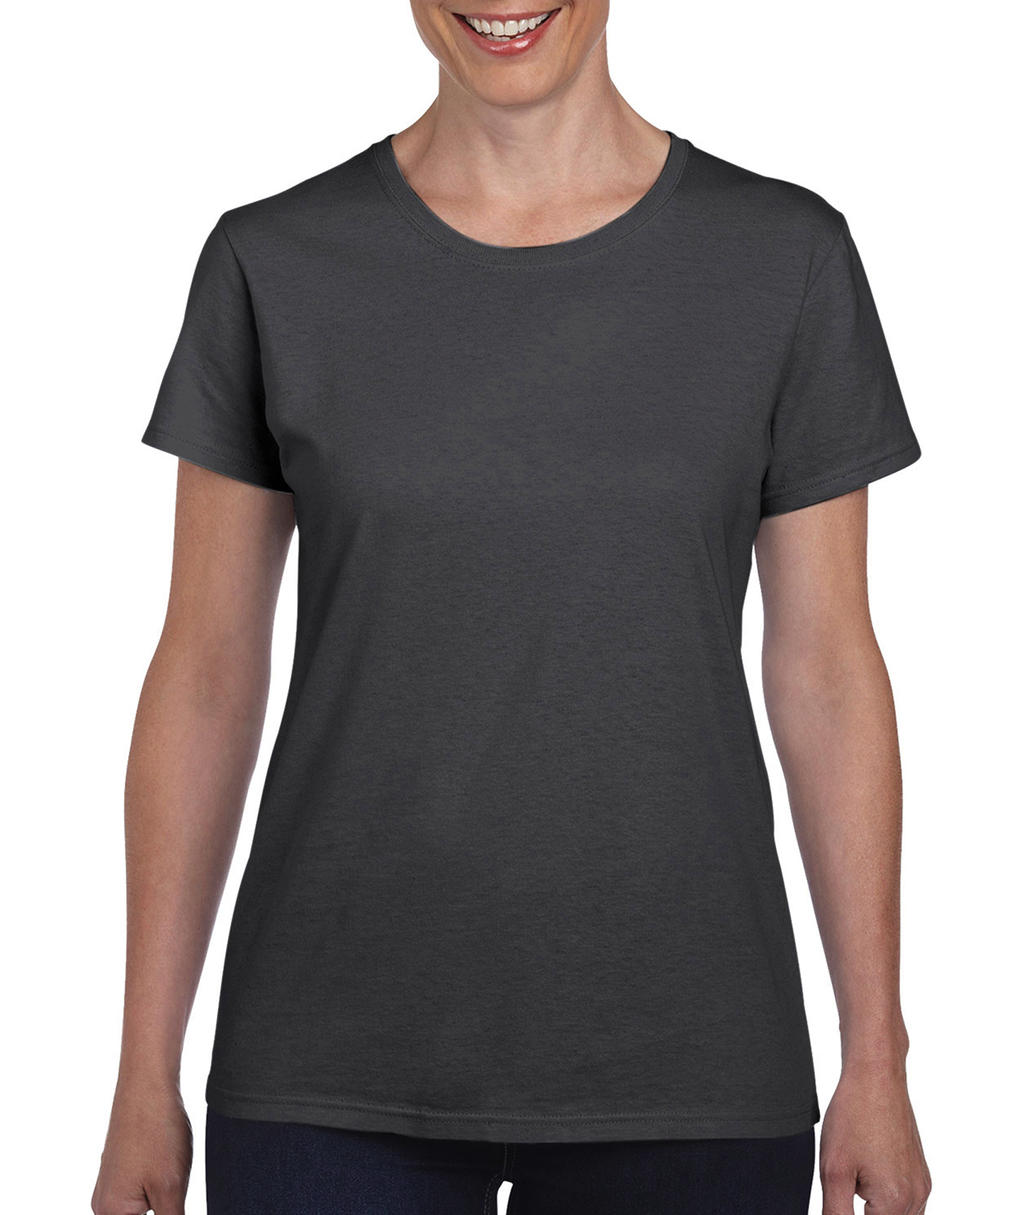  Ladies Heavy Cotton T-Shirt in Farbe Dark Heather